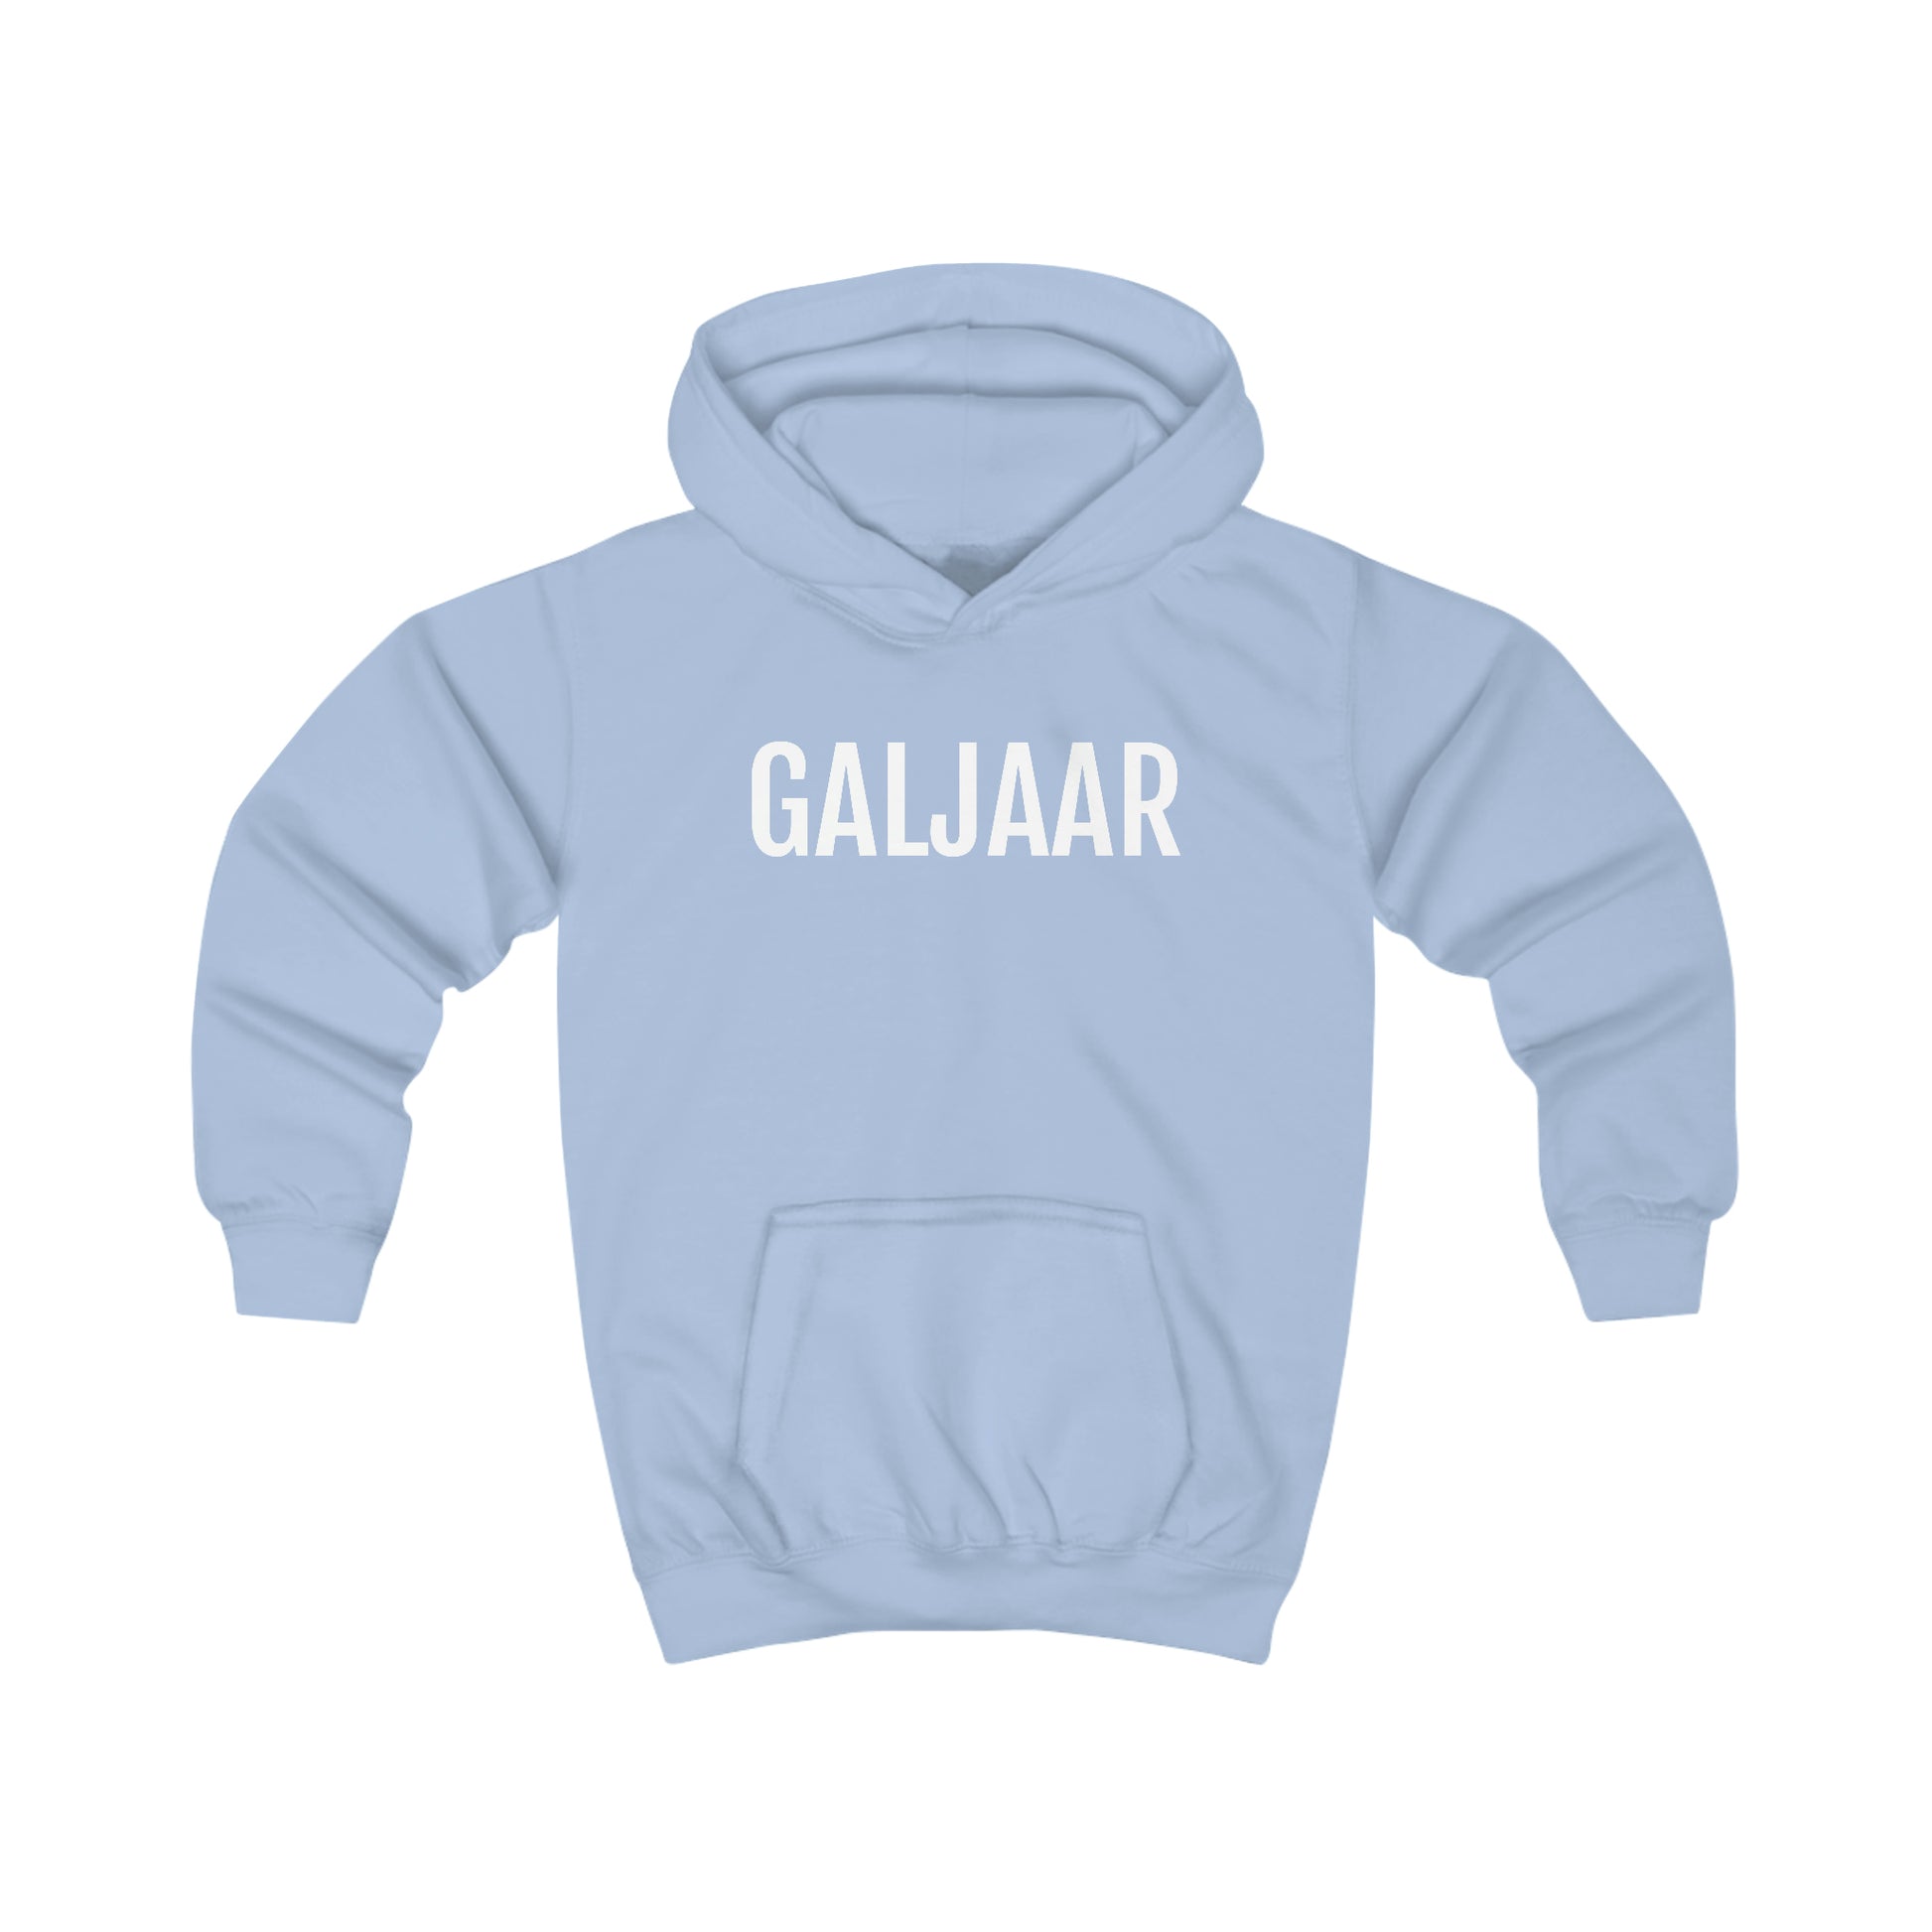 Galjaar | Unisex hoodie uit Oost-Vlaanderen voor kinderen - Lichtblauw